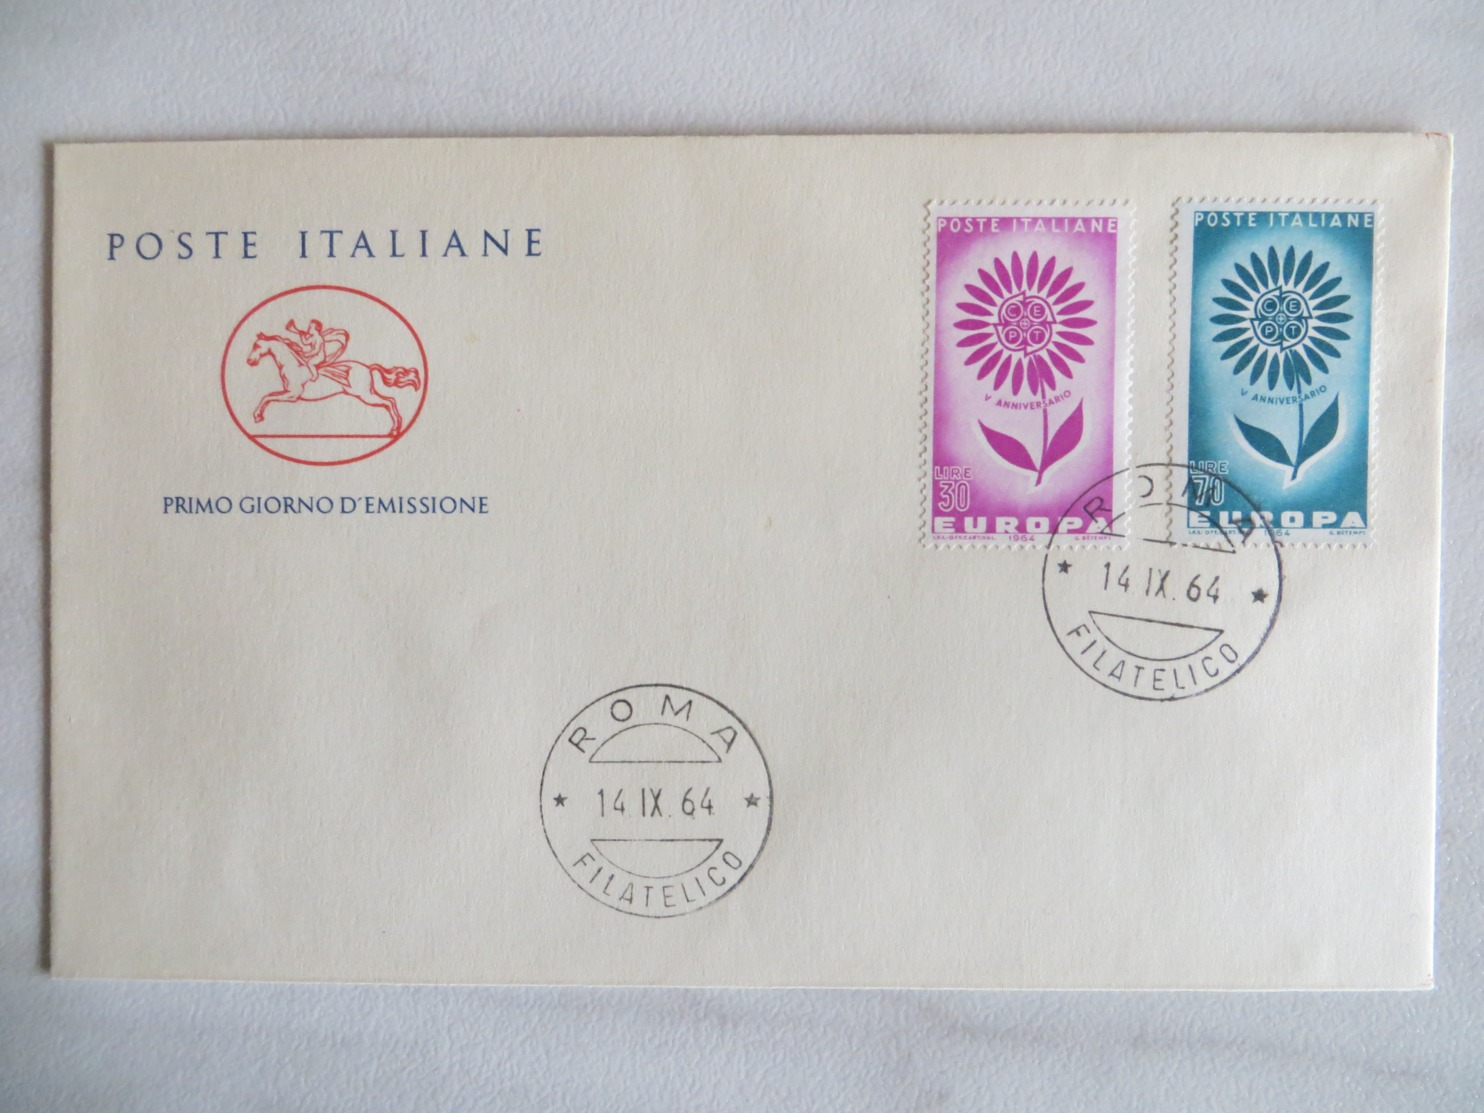 64/11) Italien 1964, Ersttagsbrief, FDC, Ersttagsstempel - 1964